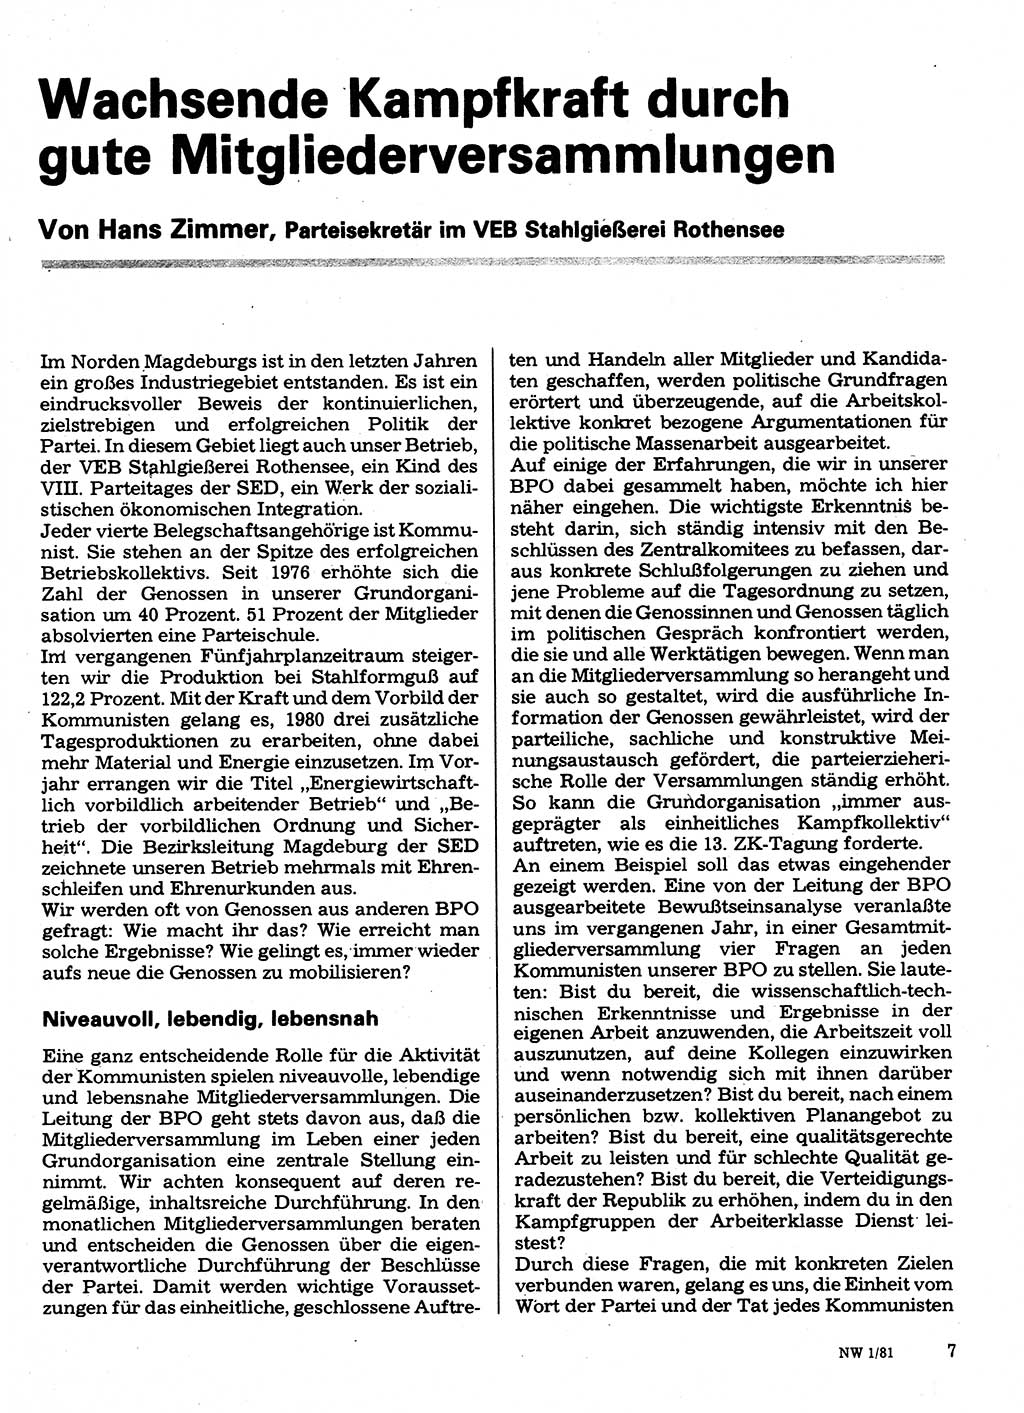 Neuer Weg (NW), Organ des Zentralkomitees (ZK) der SED (Sozialistische Einheitspartei Deutschlands) für Fragen des Parteilebens, 36. Jahrgang [Deutsche Demokratische Republik (DDR)] 1981, Seite 7 (NW ZK SED DDR 1981, S. 7)